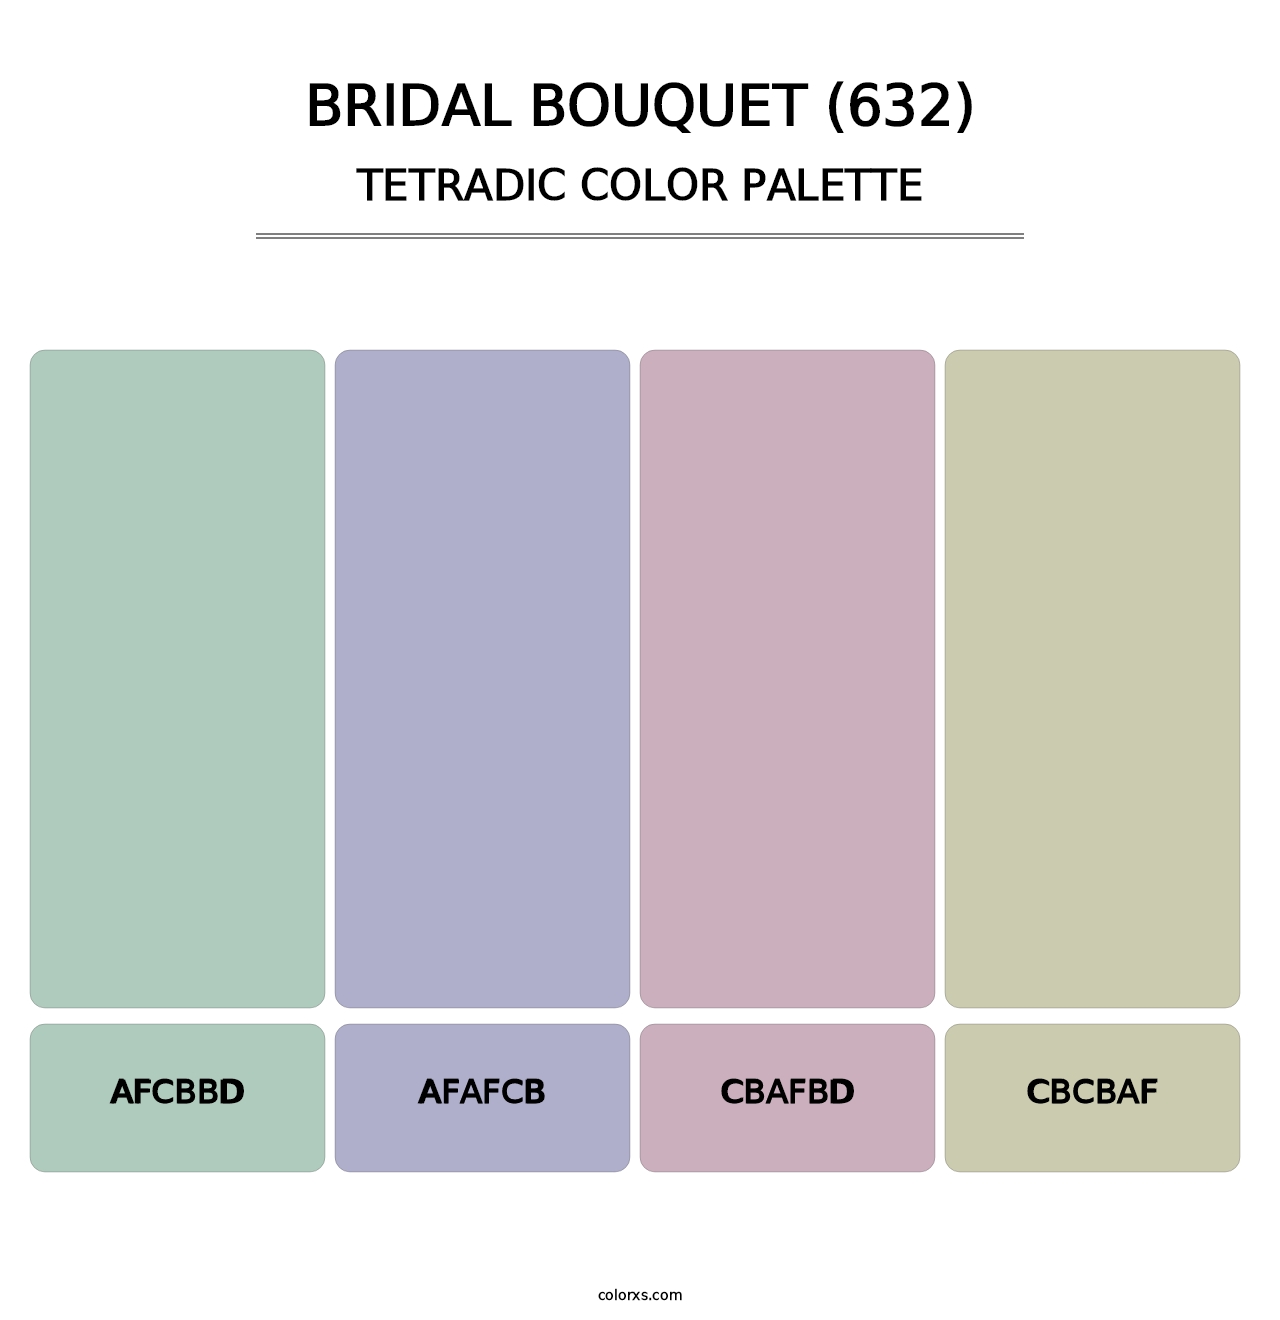 Bridal Bouquet (632) - Tetradic Color Palette